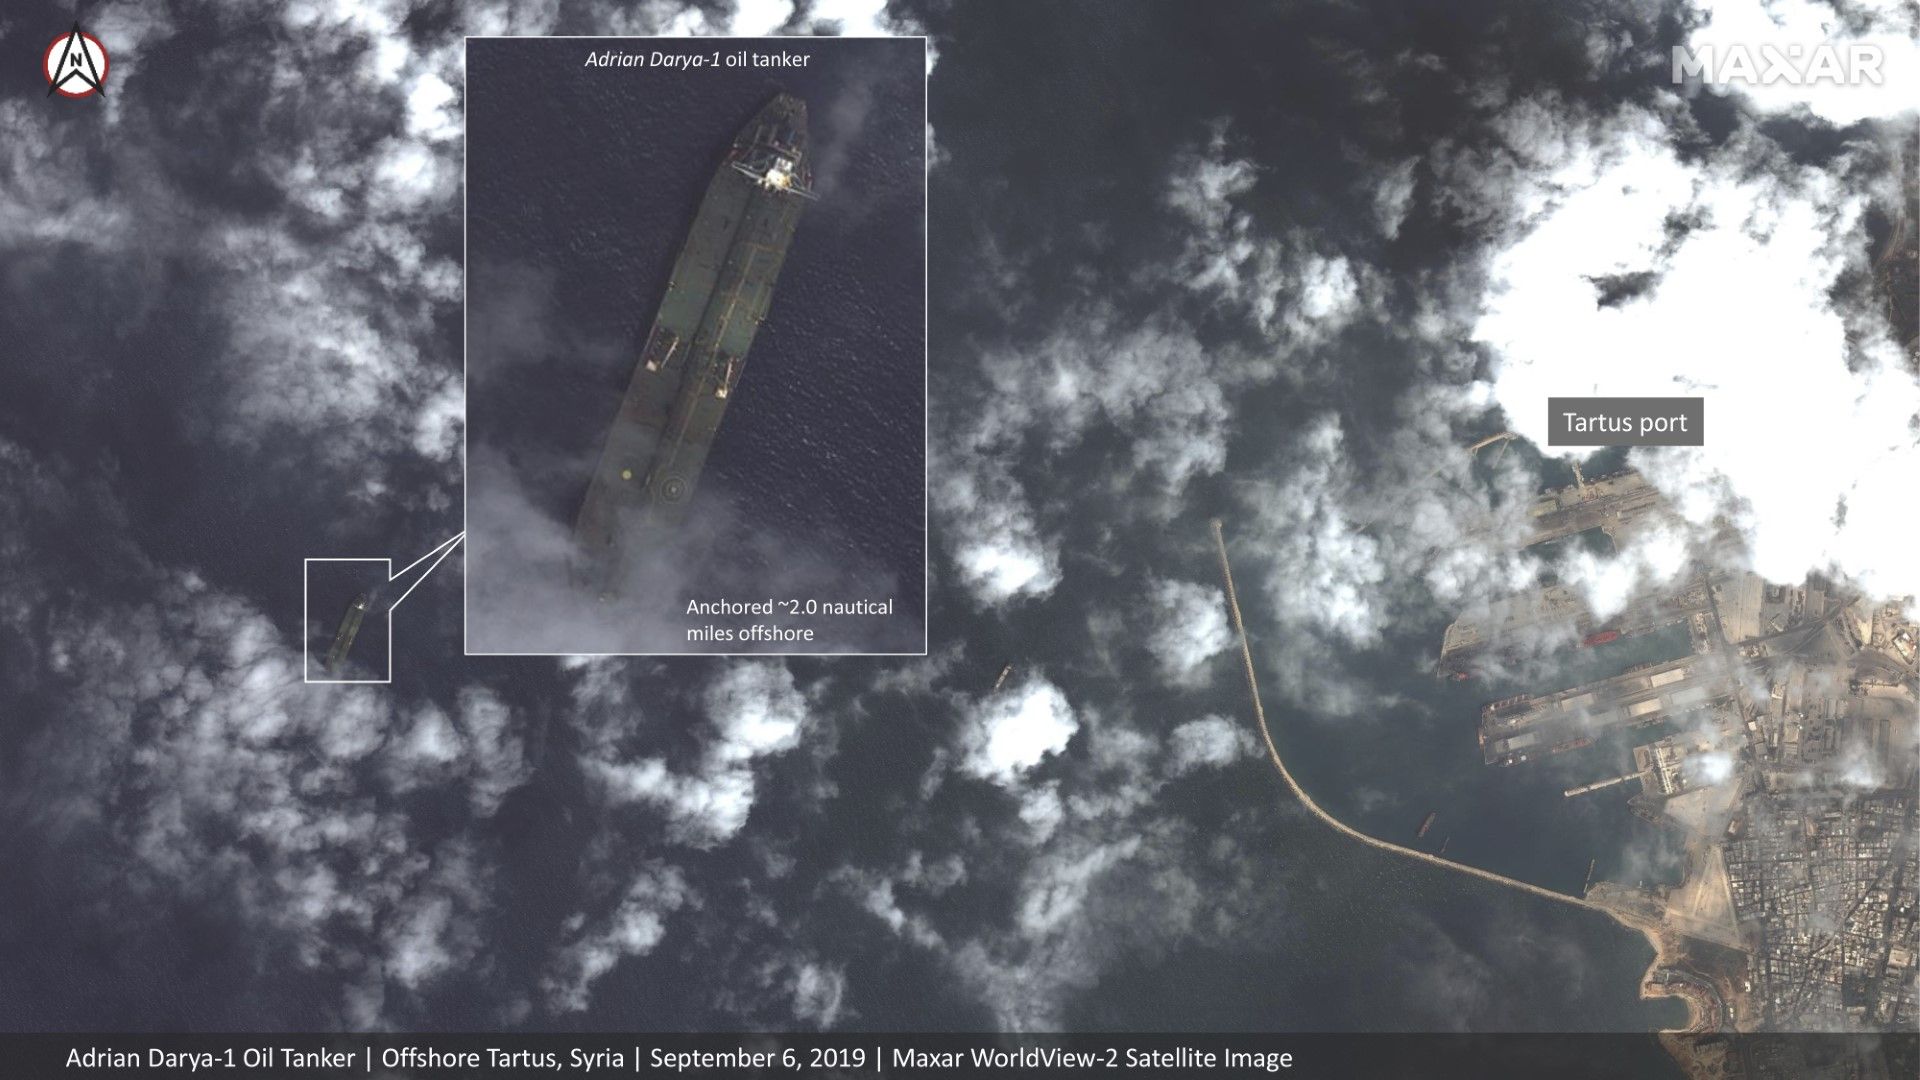 Сателитни снимки на "Максар текнолъджиз" показват танкера "Адриан Даря 1" край Сирия